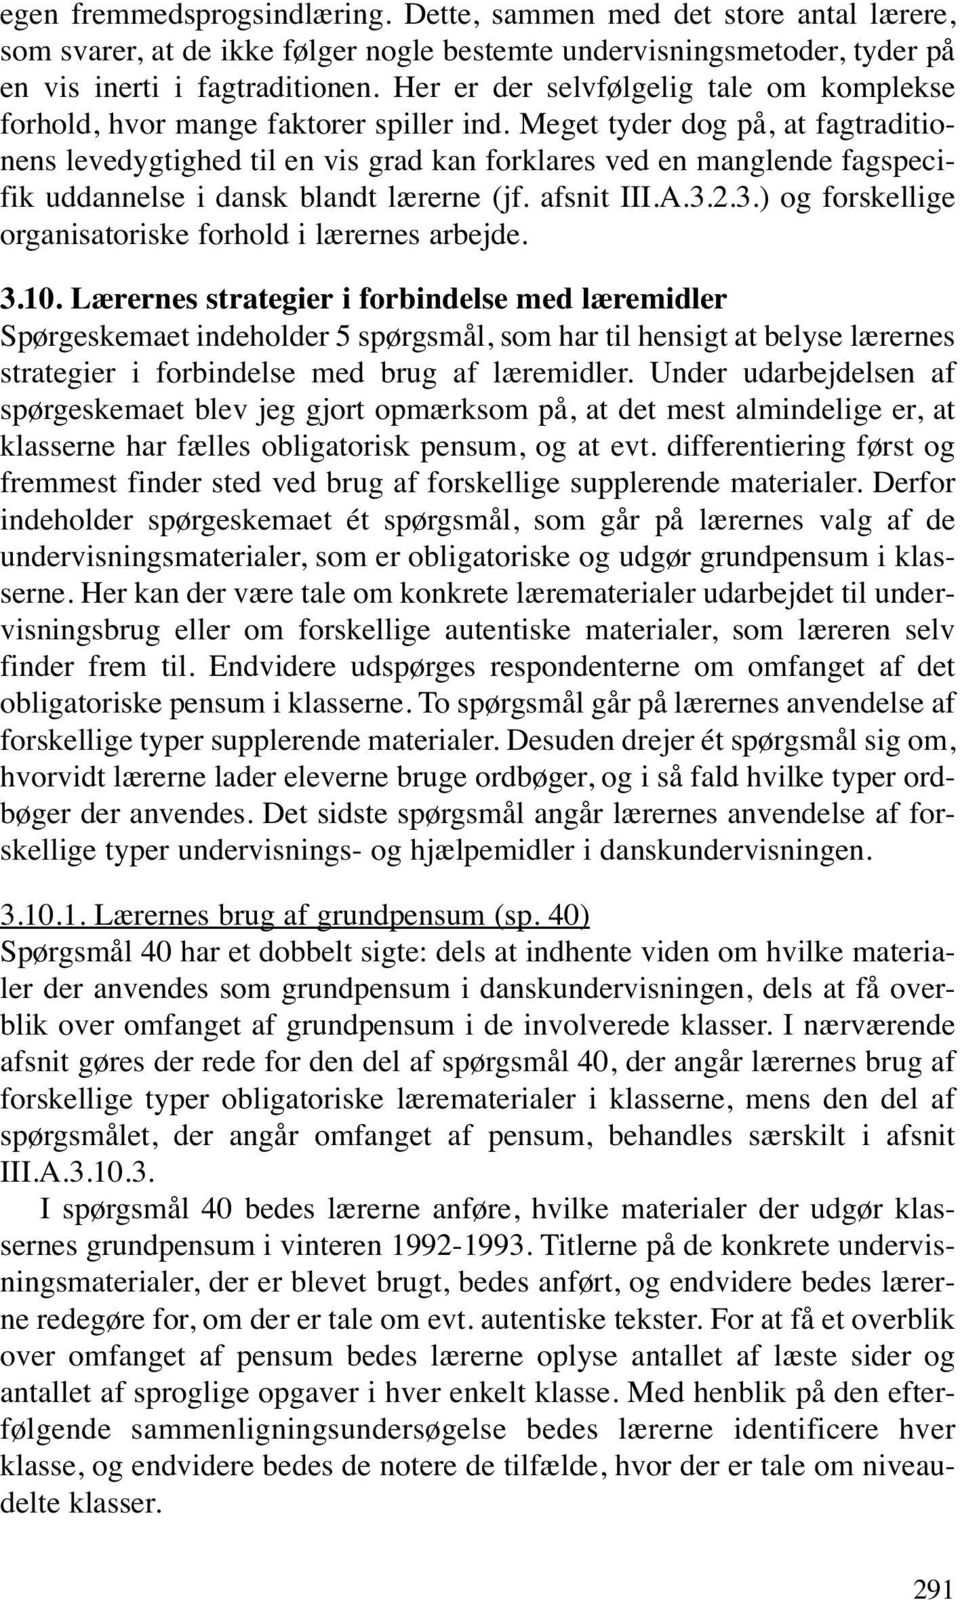 Meget tyder dog på, at fagtraditionens levedygtighed til en vis grad kan forklares ved en manglende fagspecifik uddannelse i dansk blandt lærerne (jf. afsnit III.A.3.